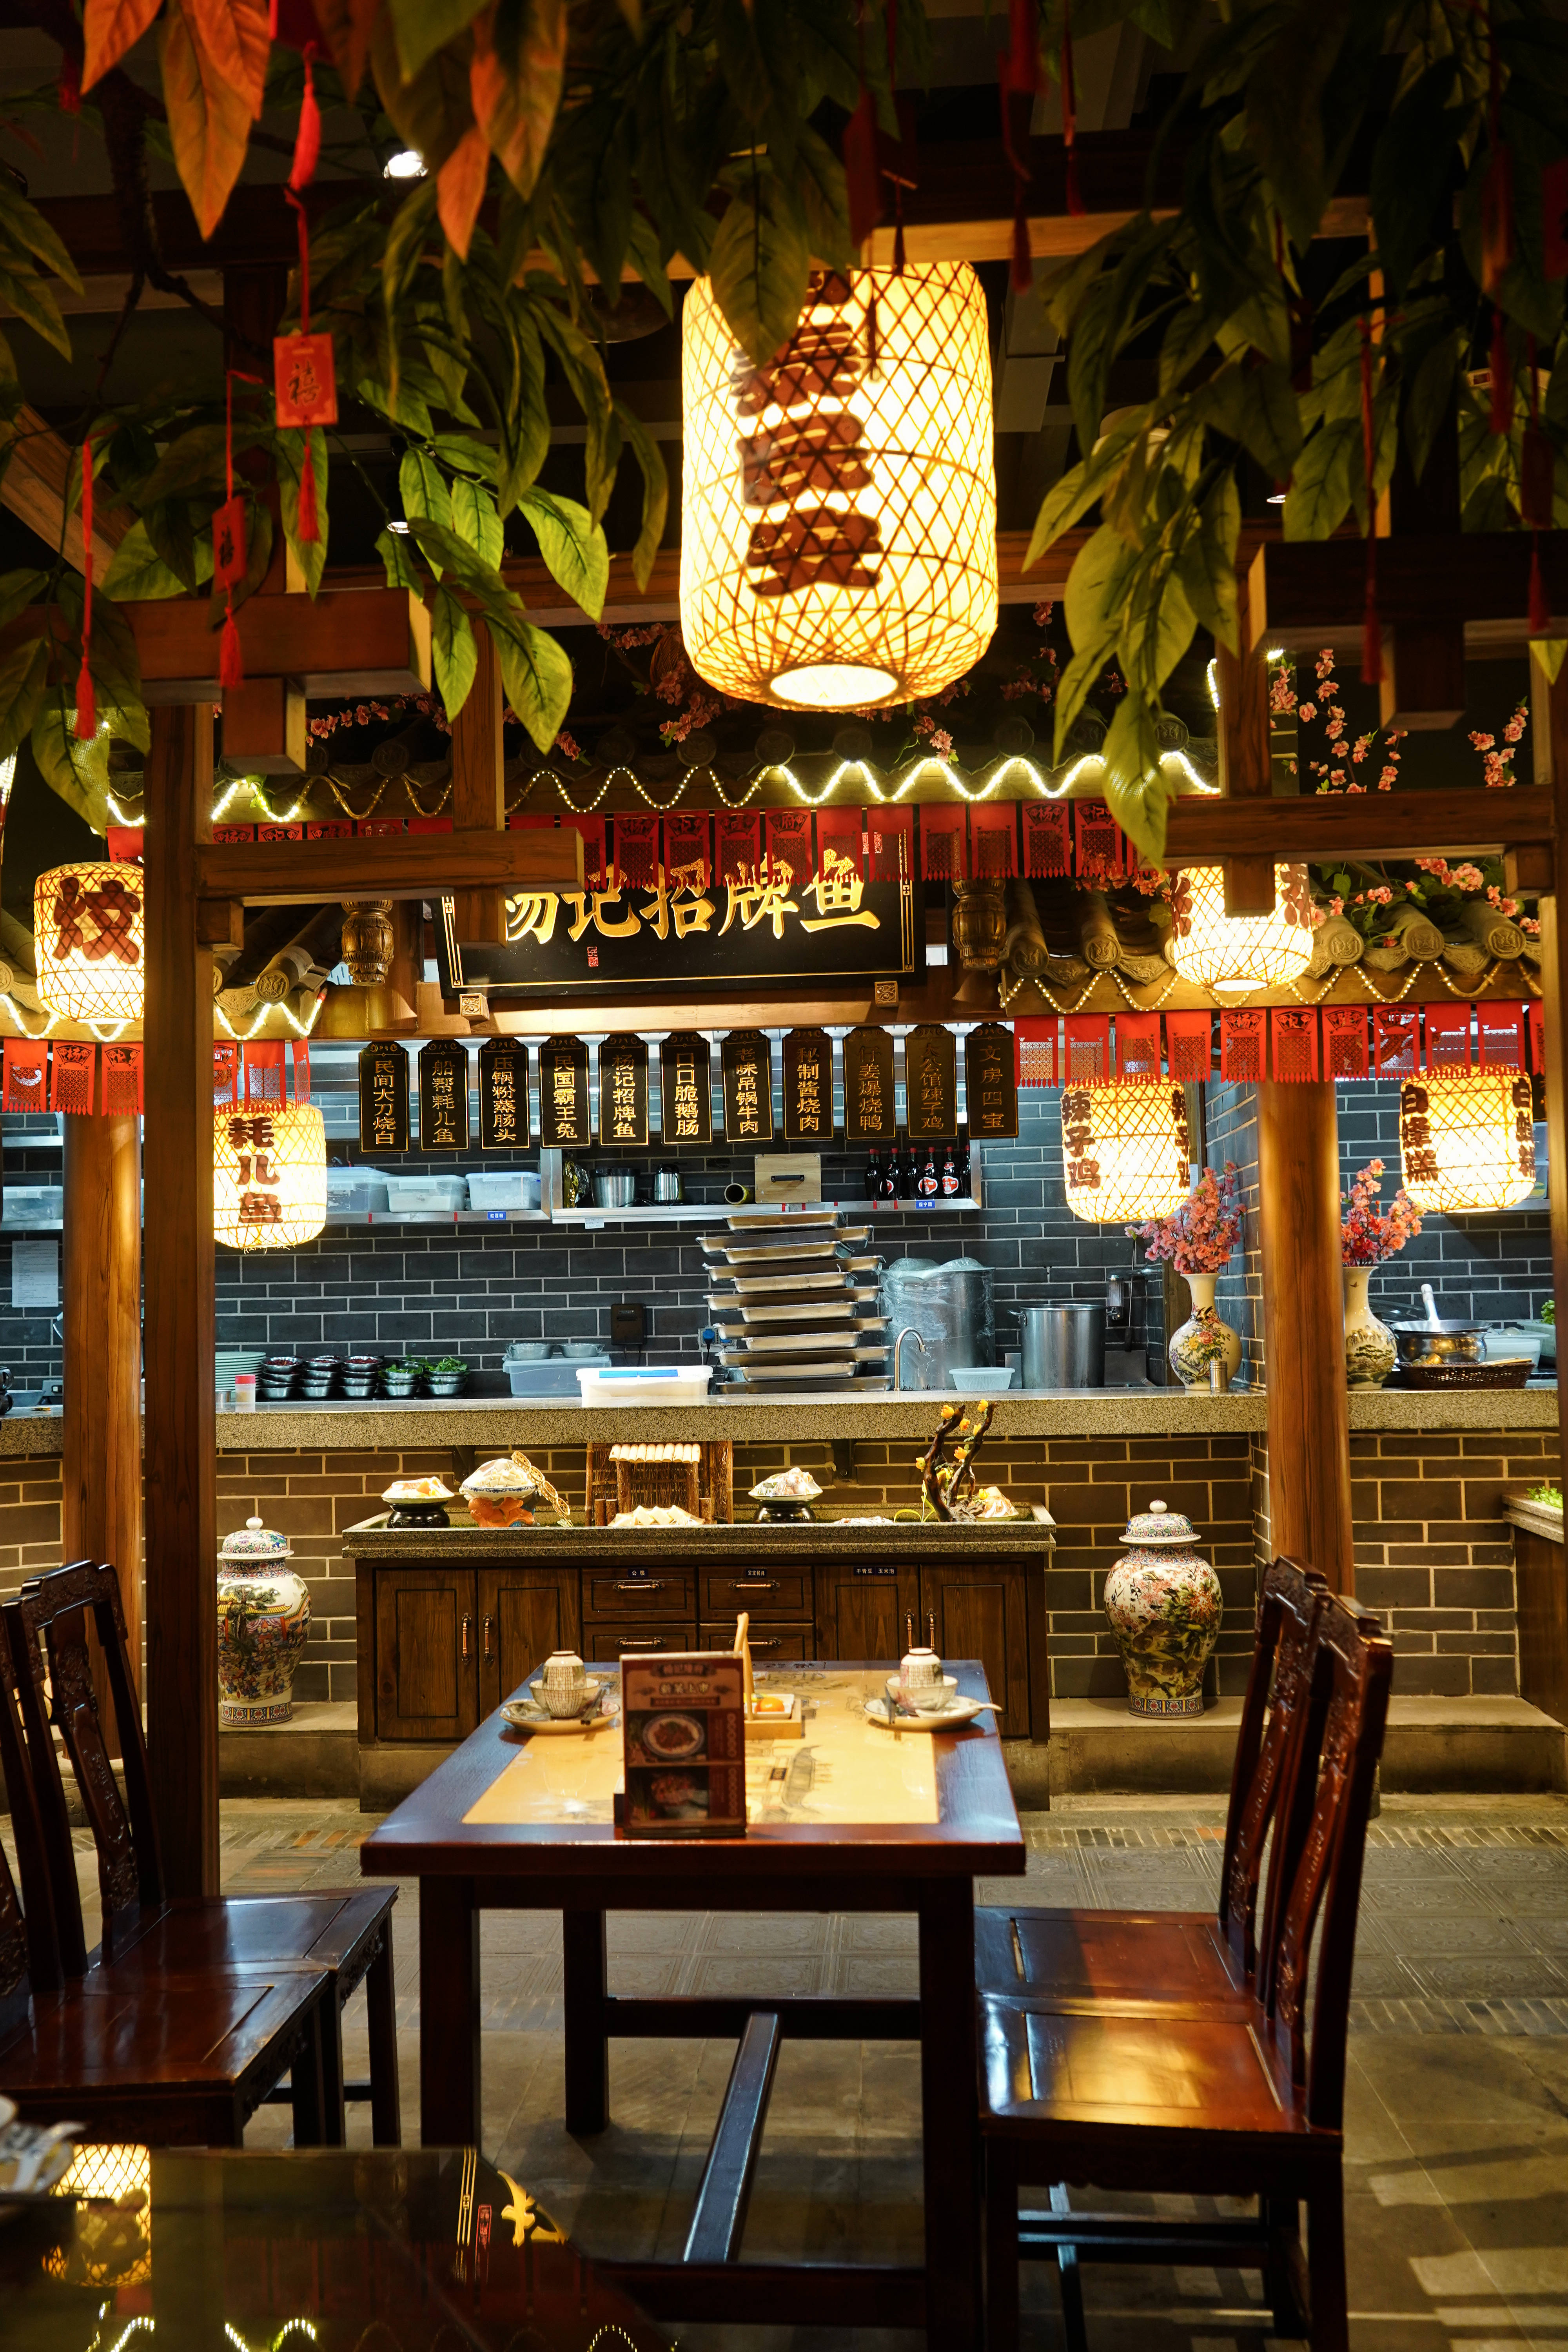 重庆来福士攻略，一站式打卡网红景点、美食及重庆第一家火锅店